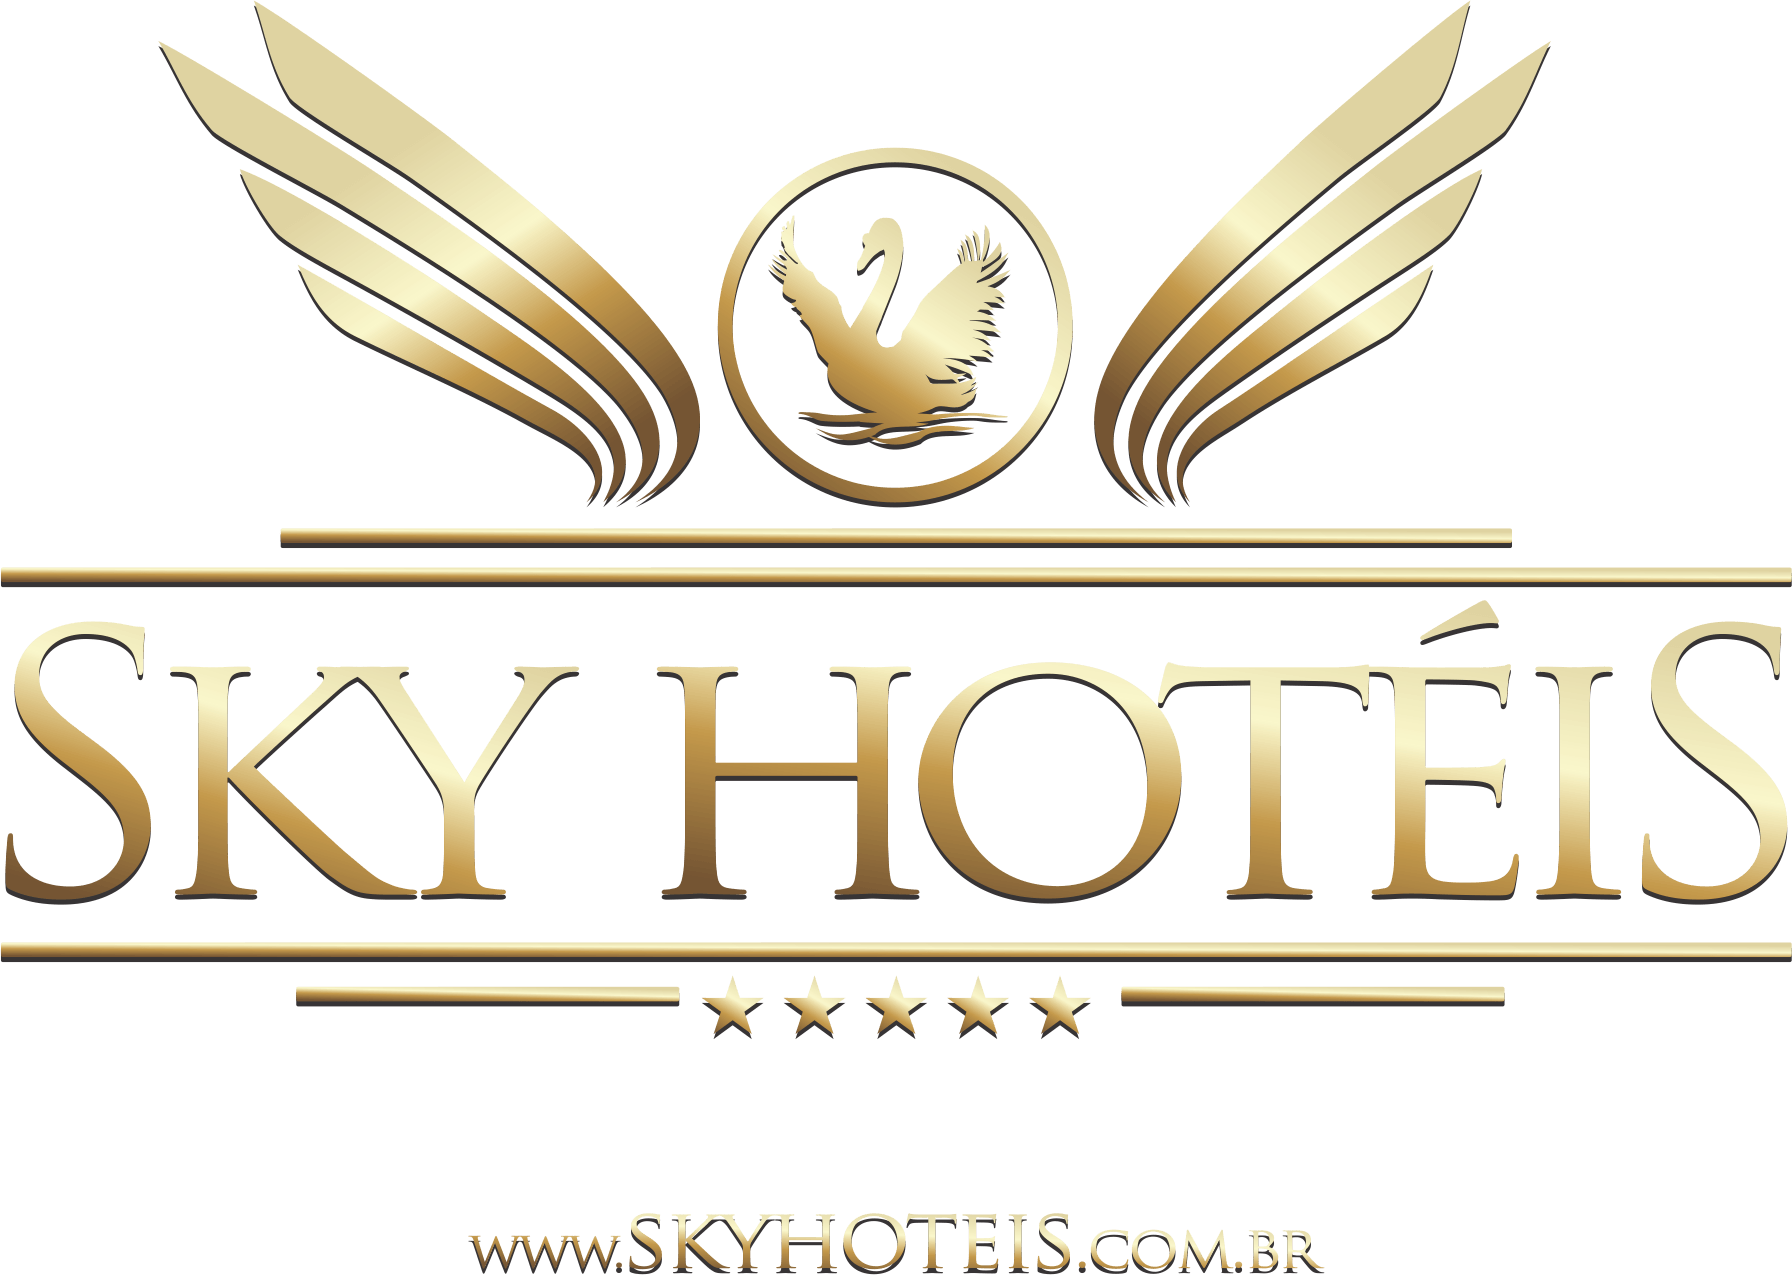 Sky Samuara Hotel: Preços, promoções e comentários